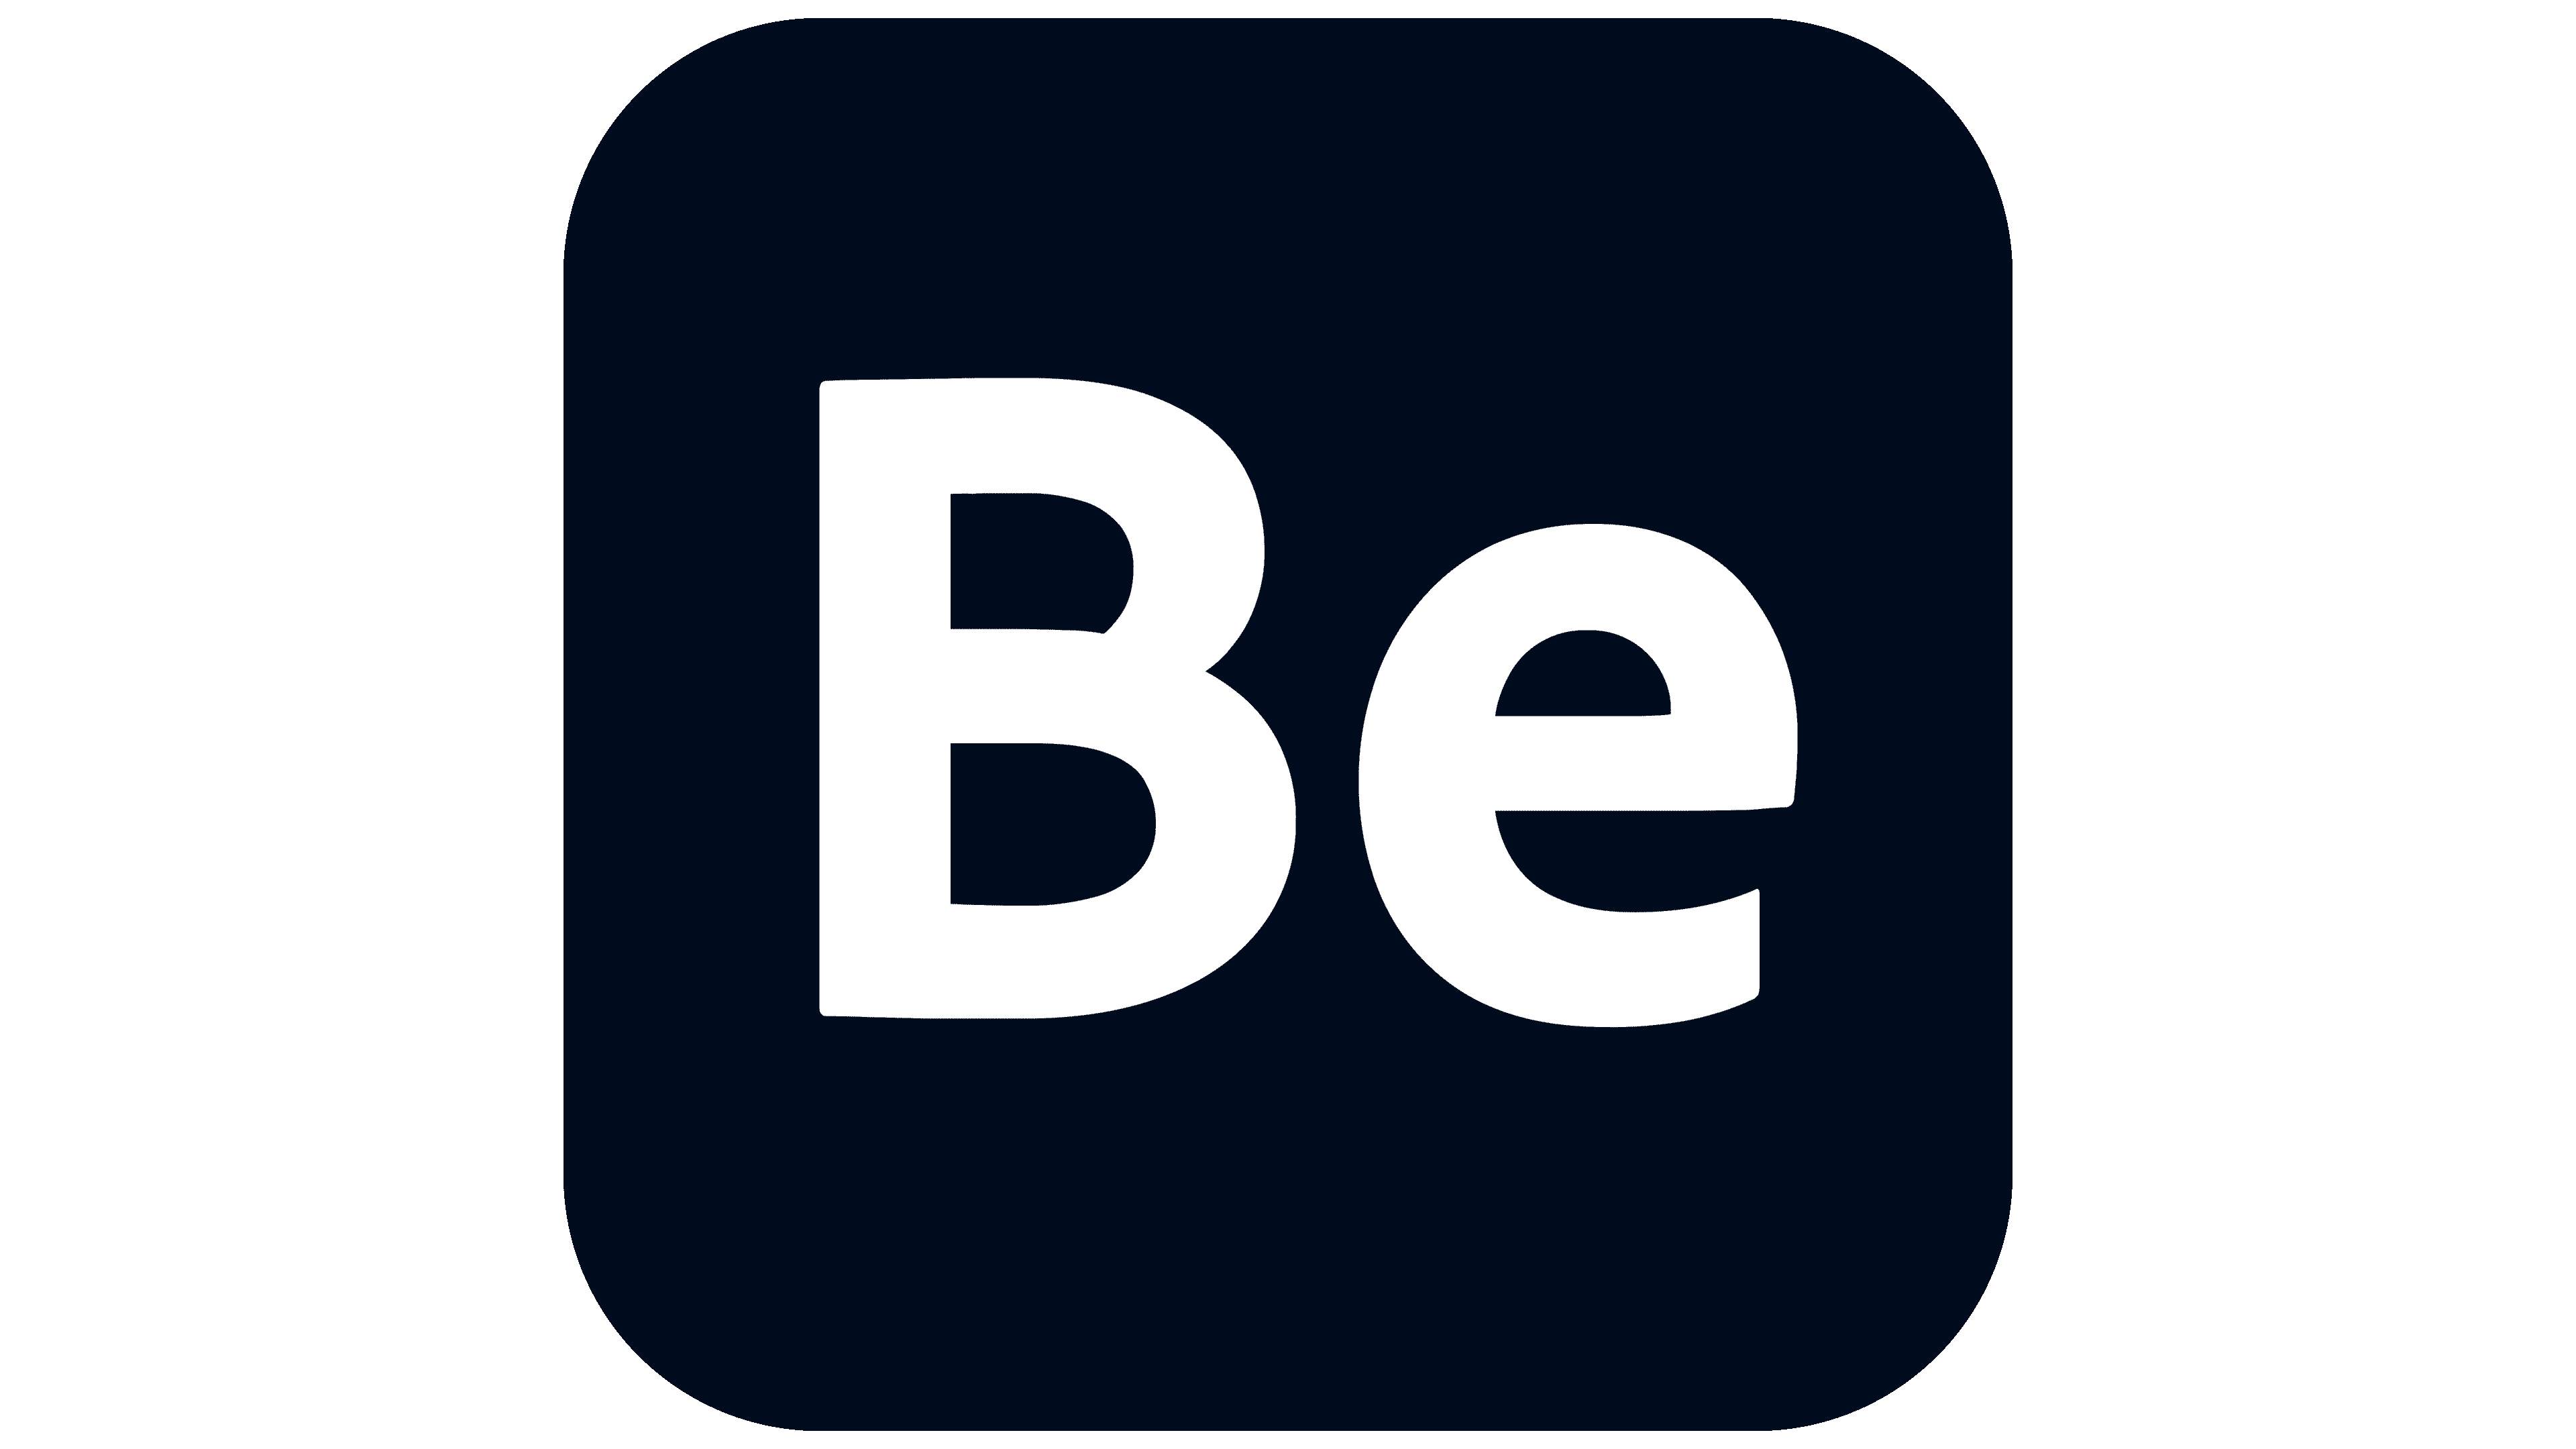 behance.net